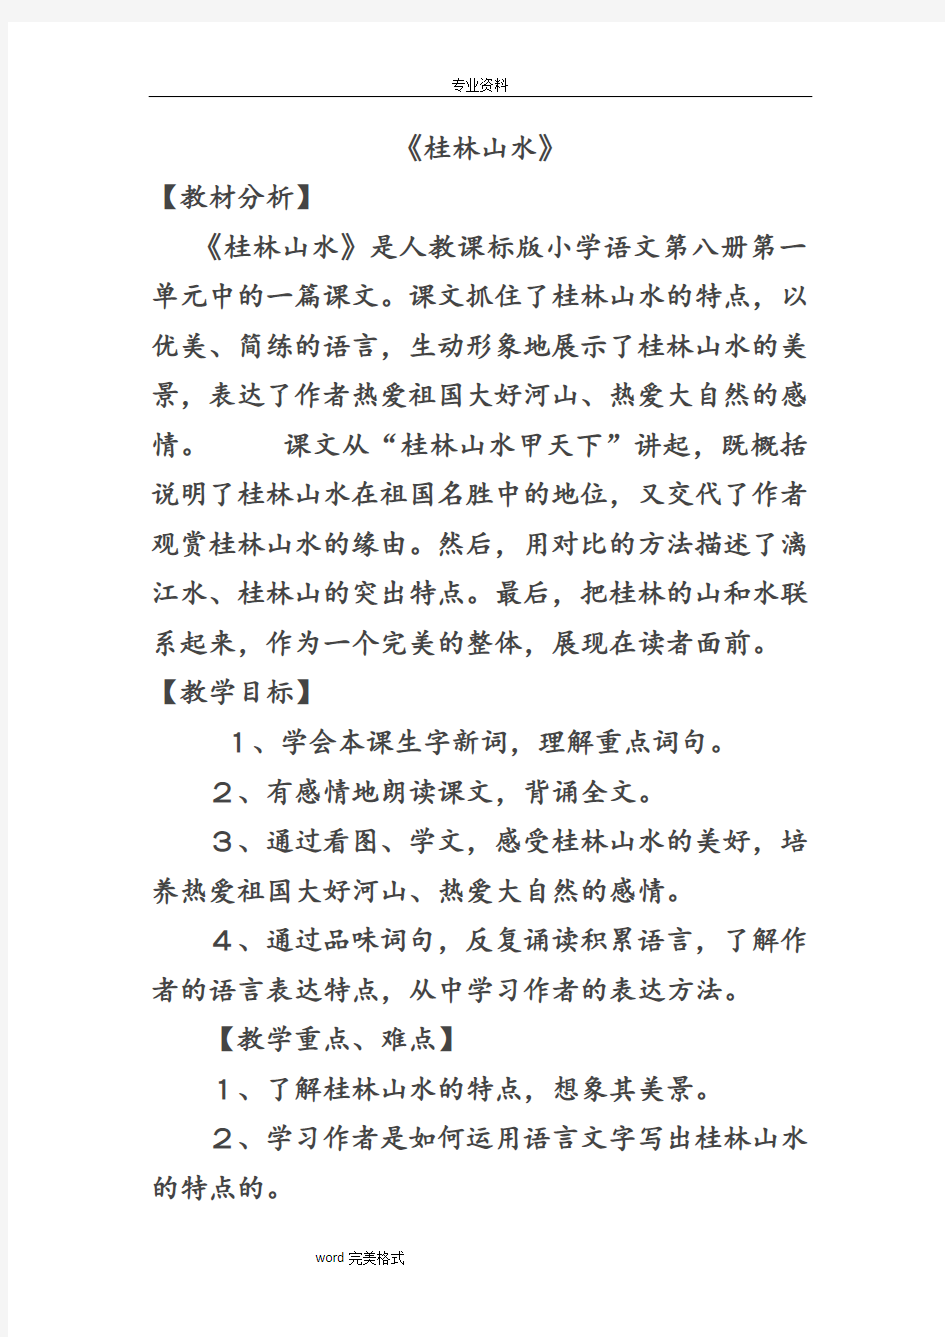 桂林山水教材分析报告